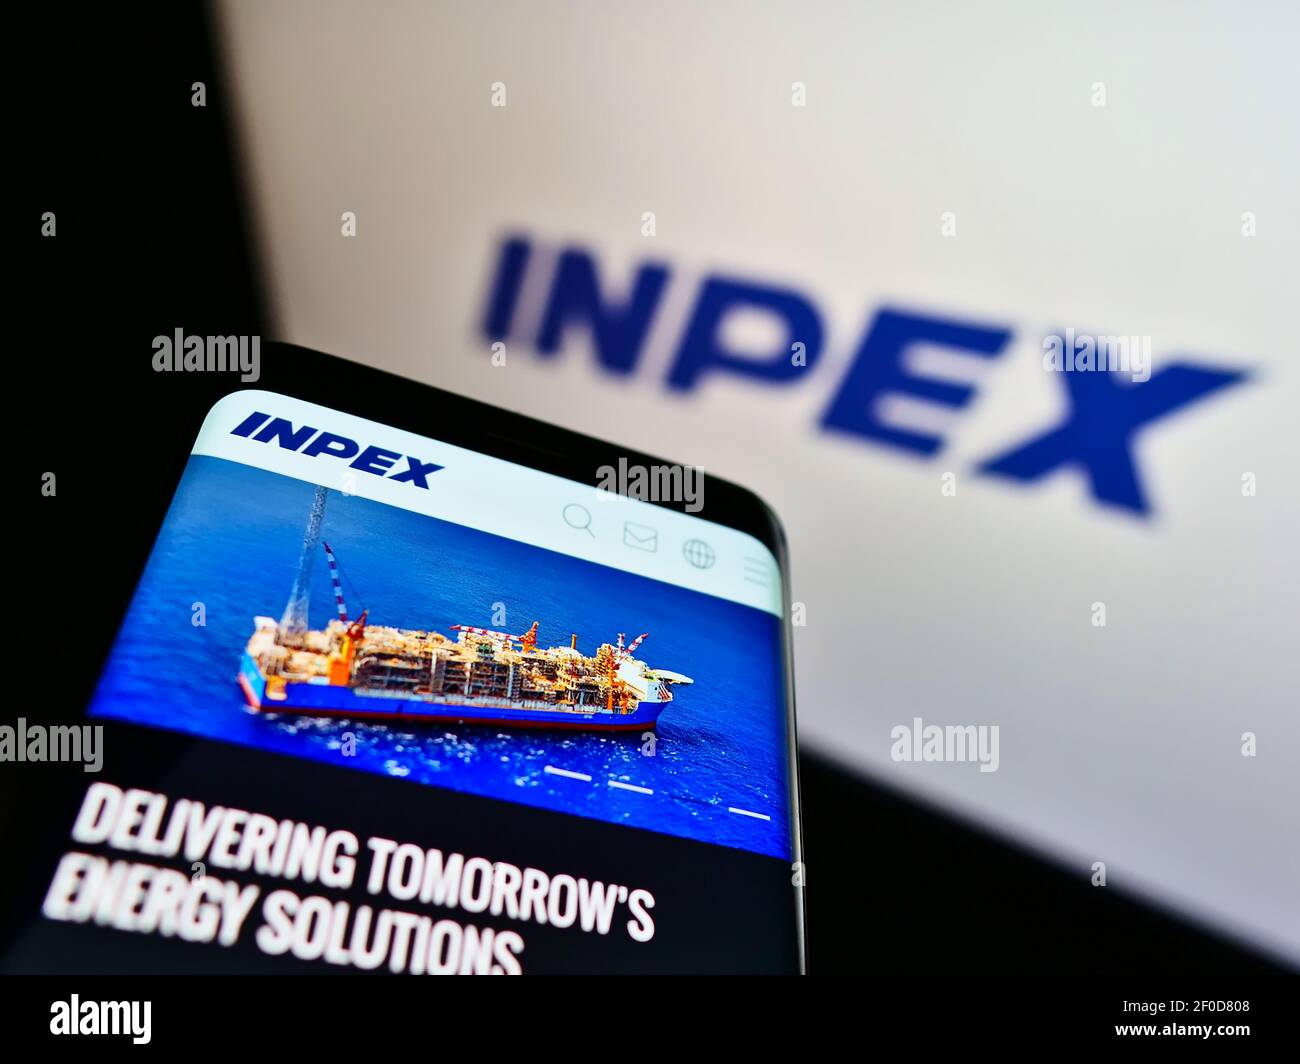 Cellulare con pagina web aziendale della compagnia giapponese di petrolio e gas Inpex KK su schermo davanti al logo. Mettere a fuoco in alto a sinistra del display del telefono. Foto Stock